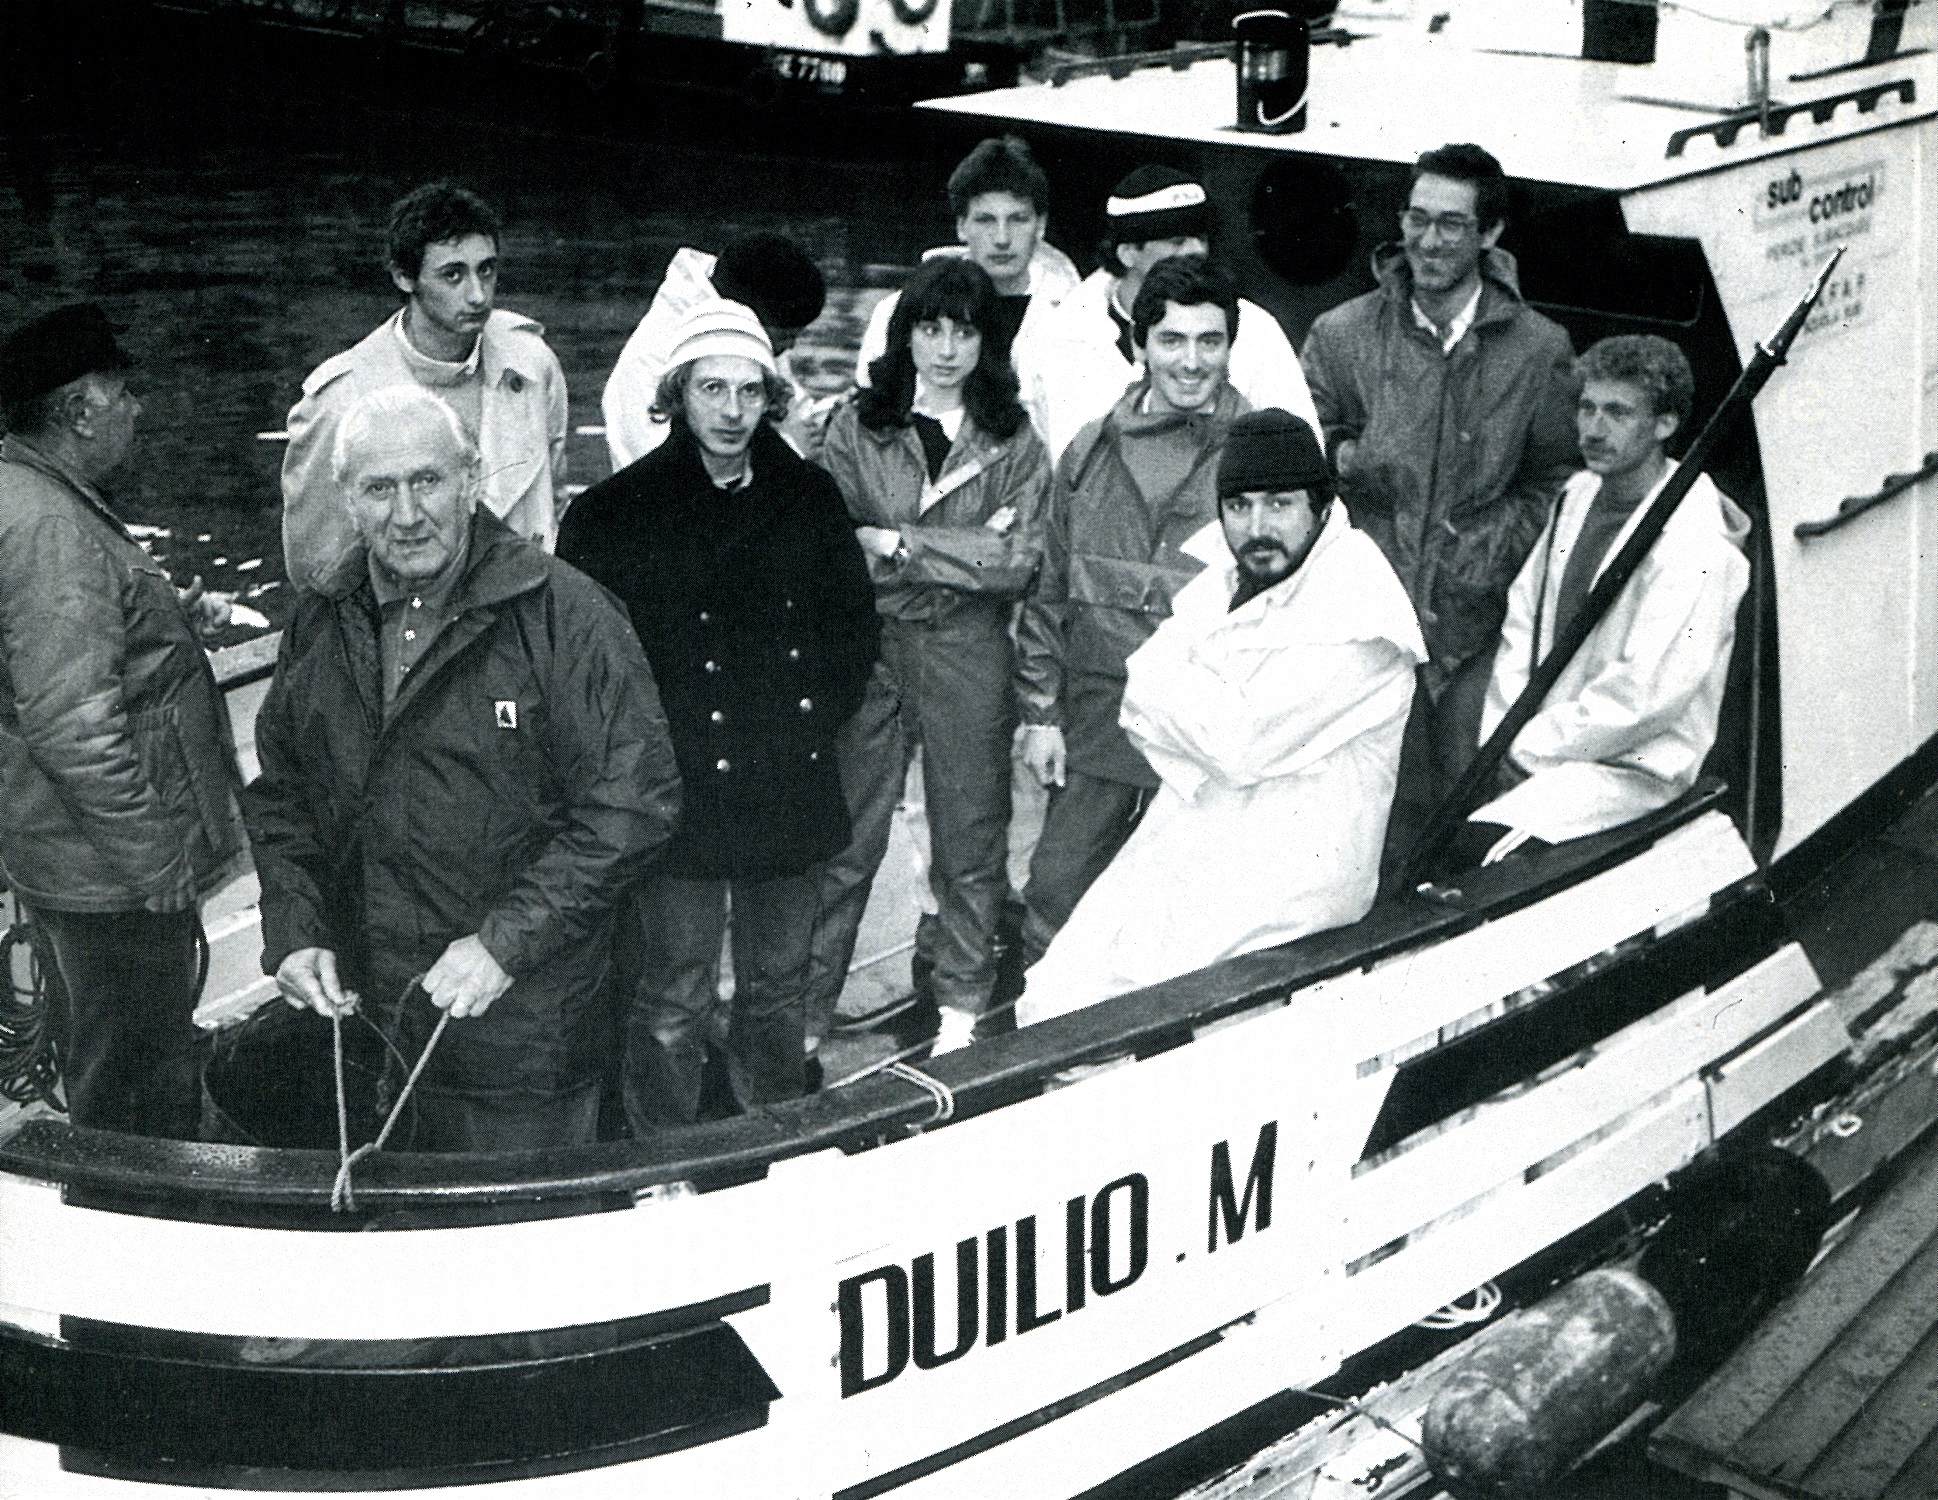 Premio Duilio Marcante 2019 - Duilio Marcante sulla barca a lui dedicata (foto scattata dal famoso giornalista e fotografo subacqueo Gianni Risso)